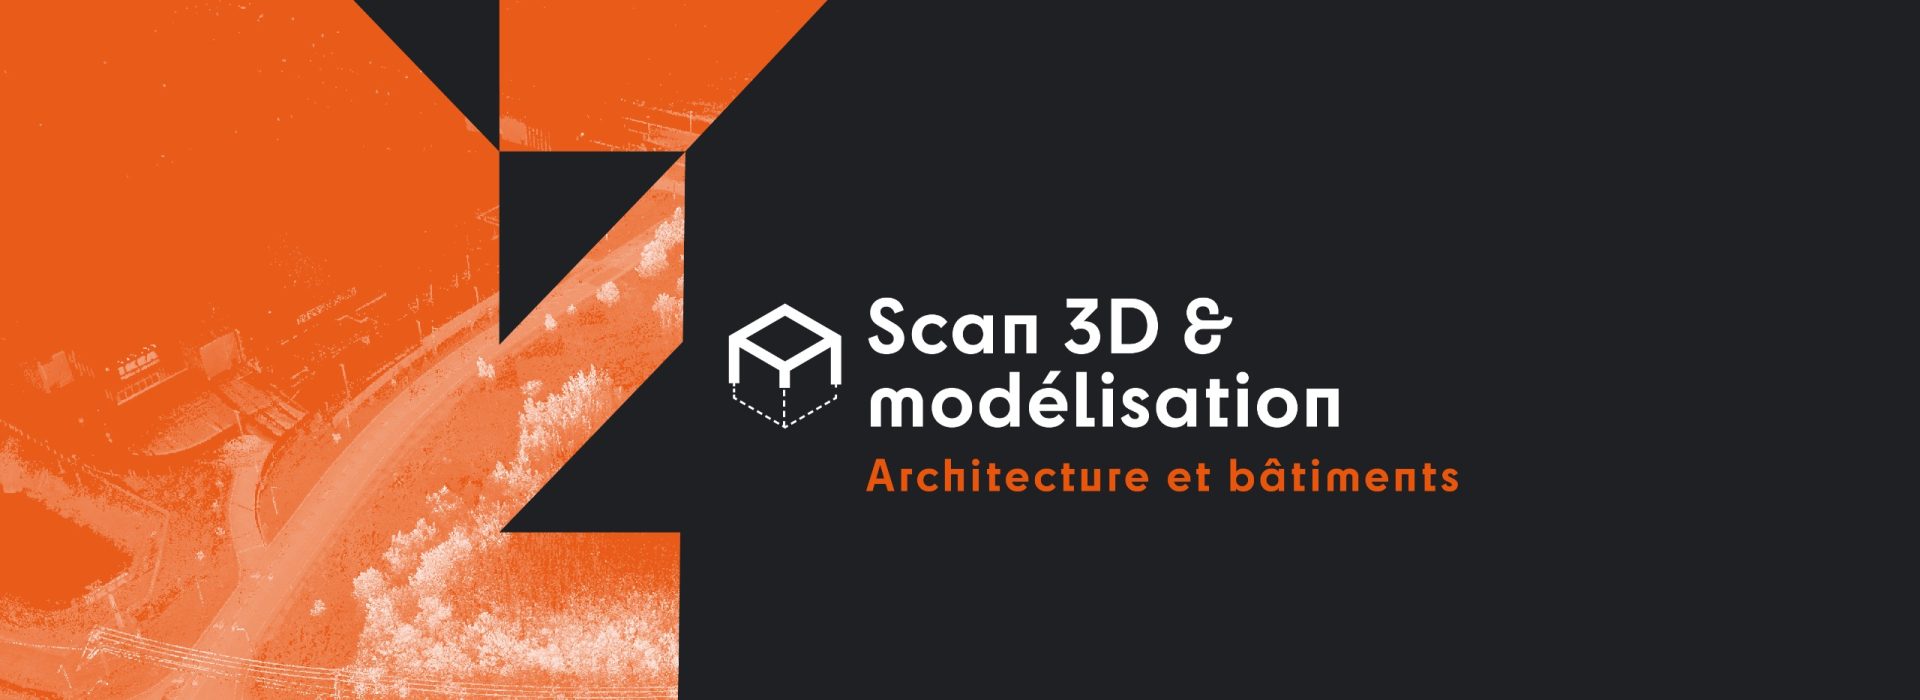 Scan 3D & modélisation - Architecture et bâtiments